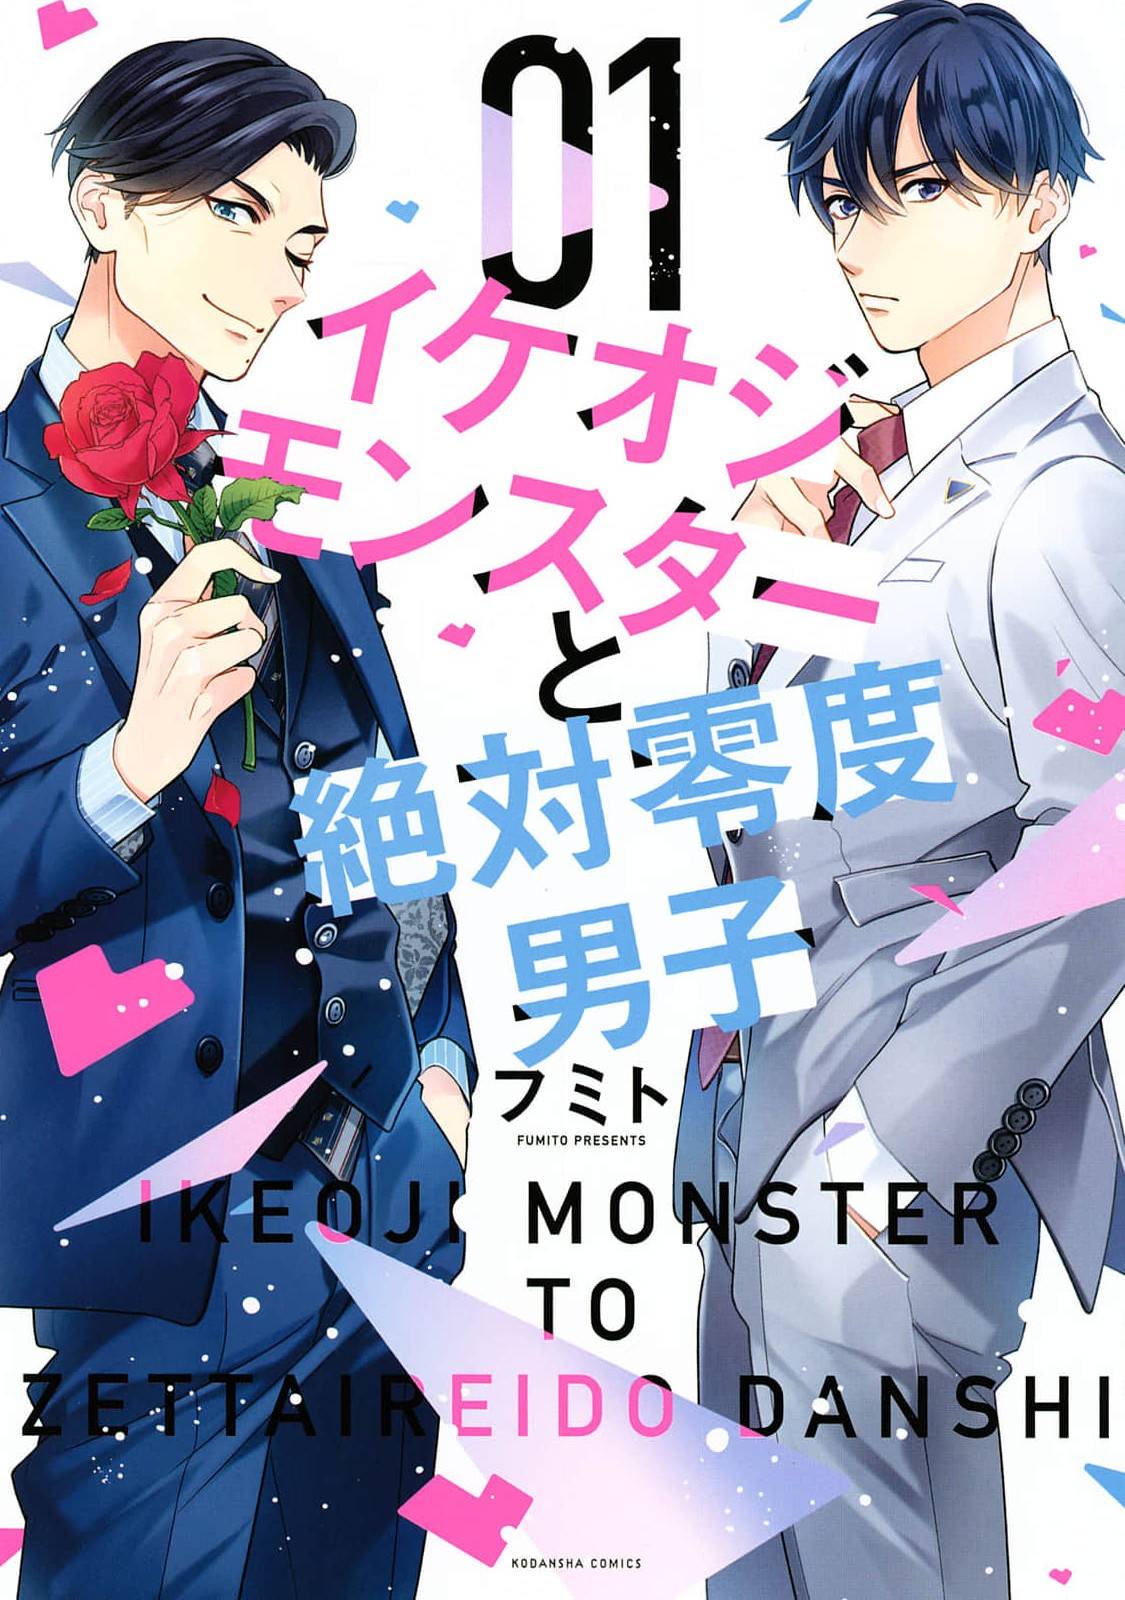 Ikeoji Monster to Zettai Reido Danshi - chapter 3 - #1